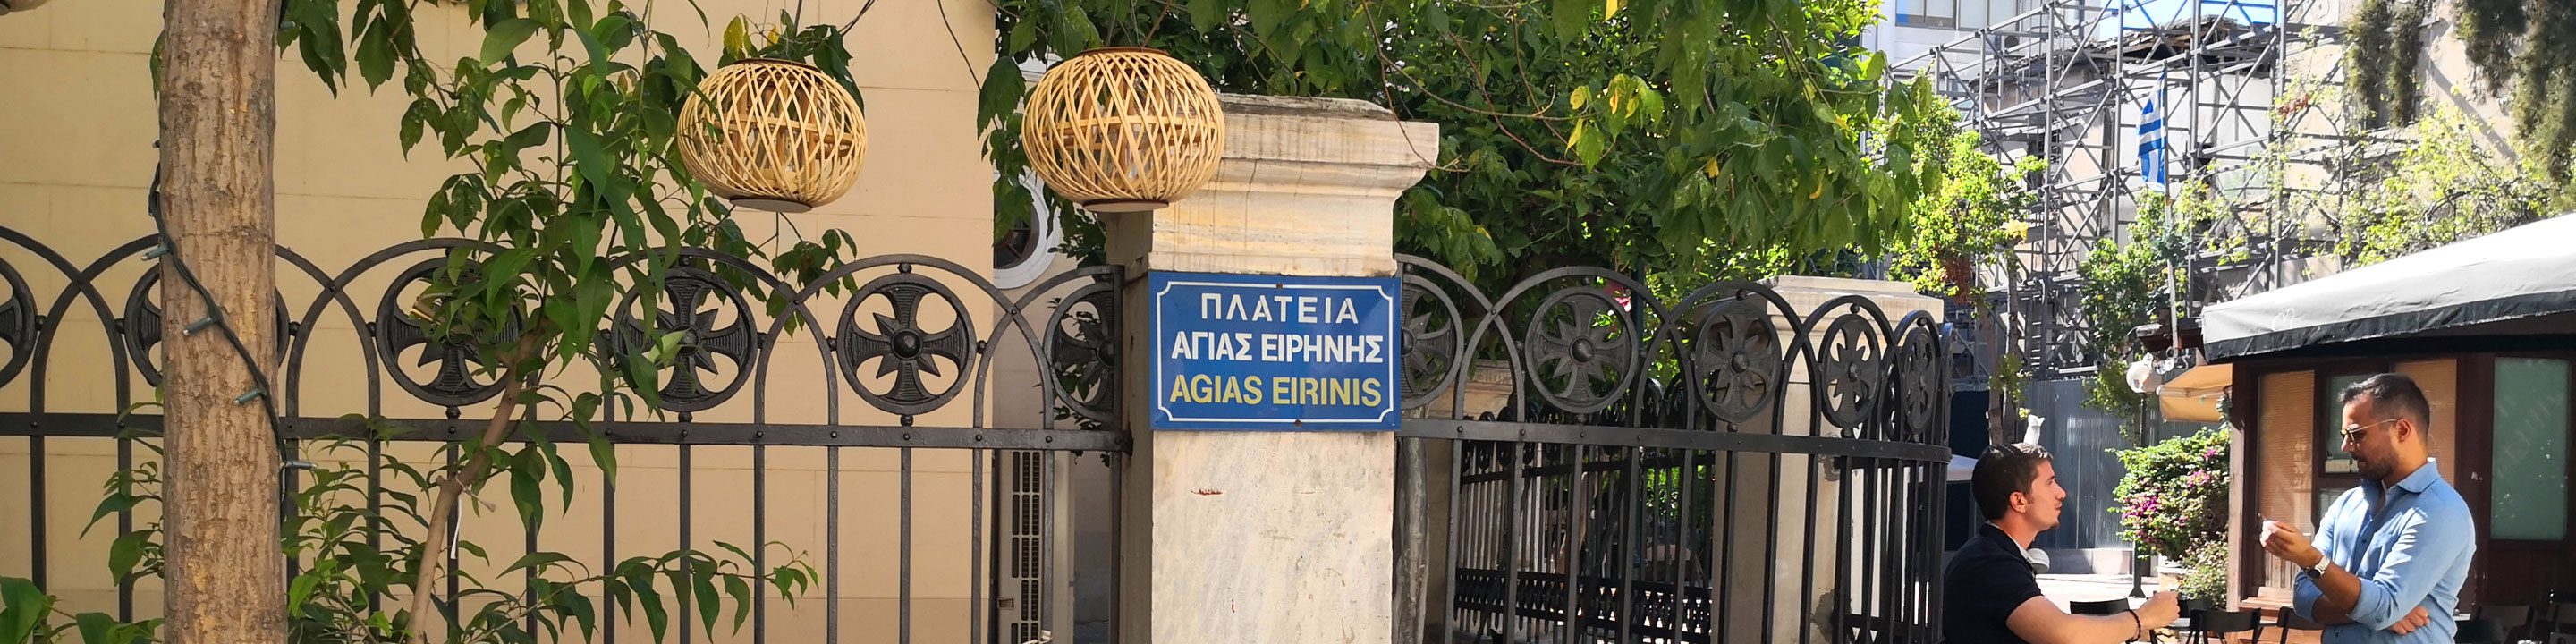  Agias Irinis Square, Athens